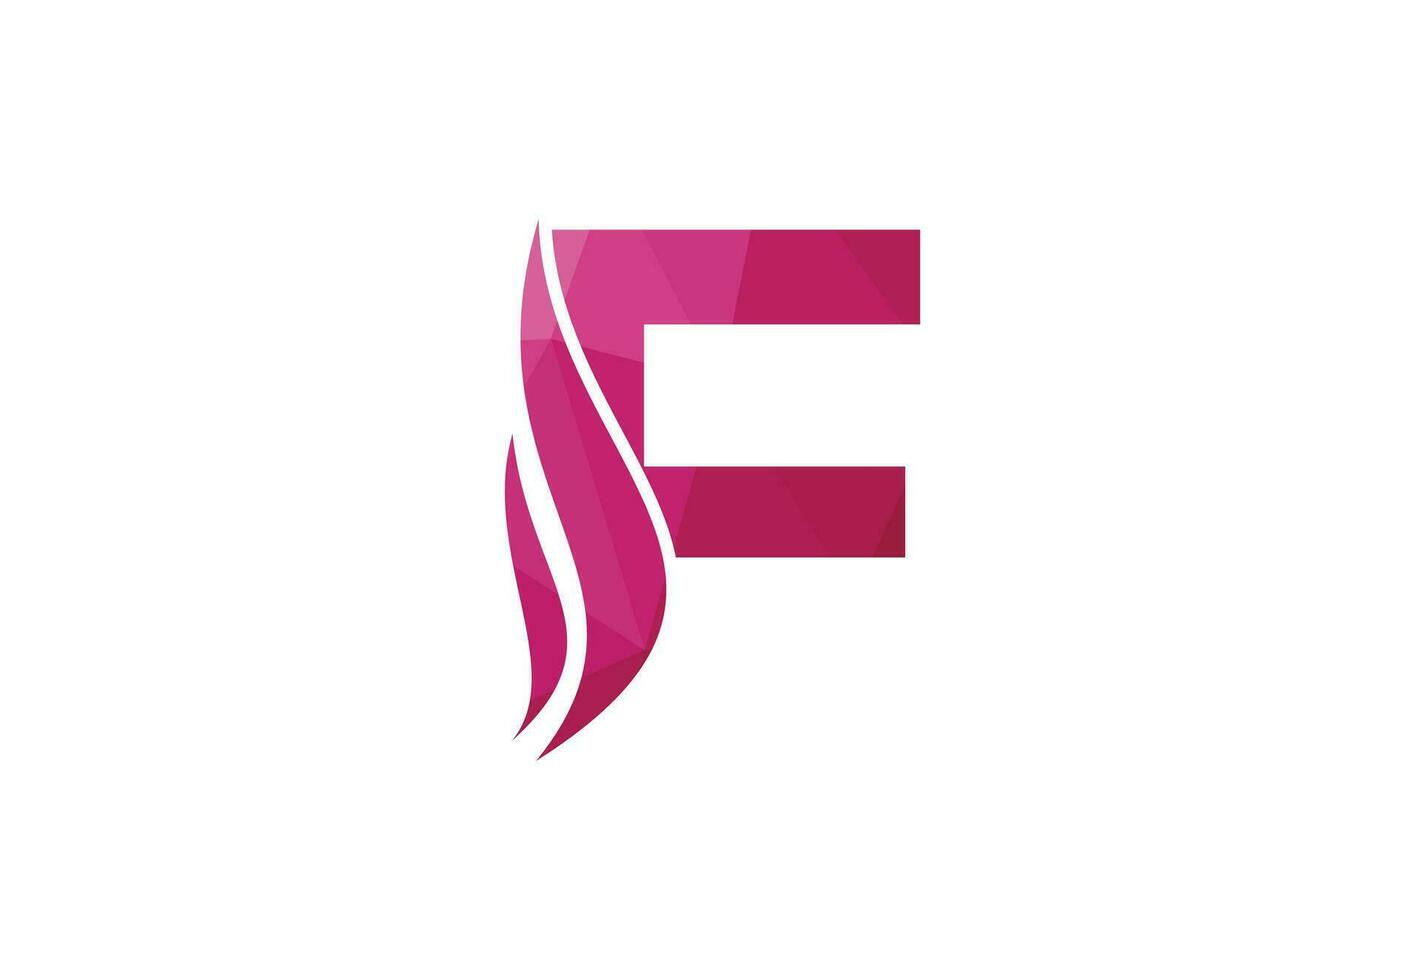 laag poly en brief f logo ontwerp sjabloon, vector illustratie